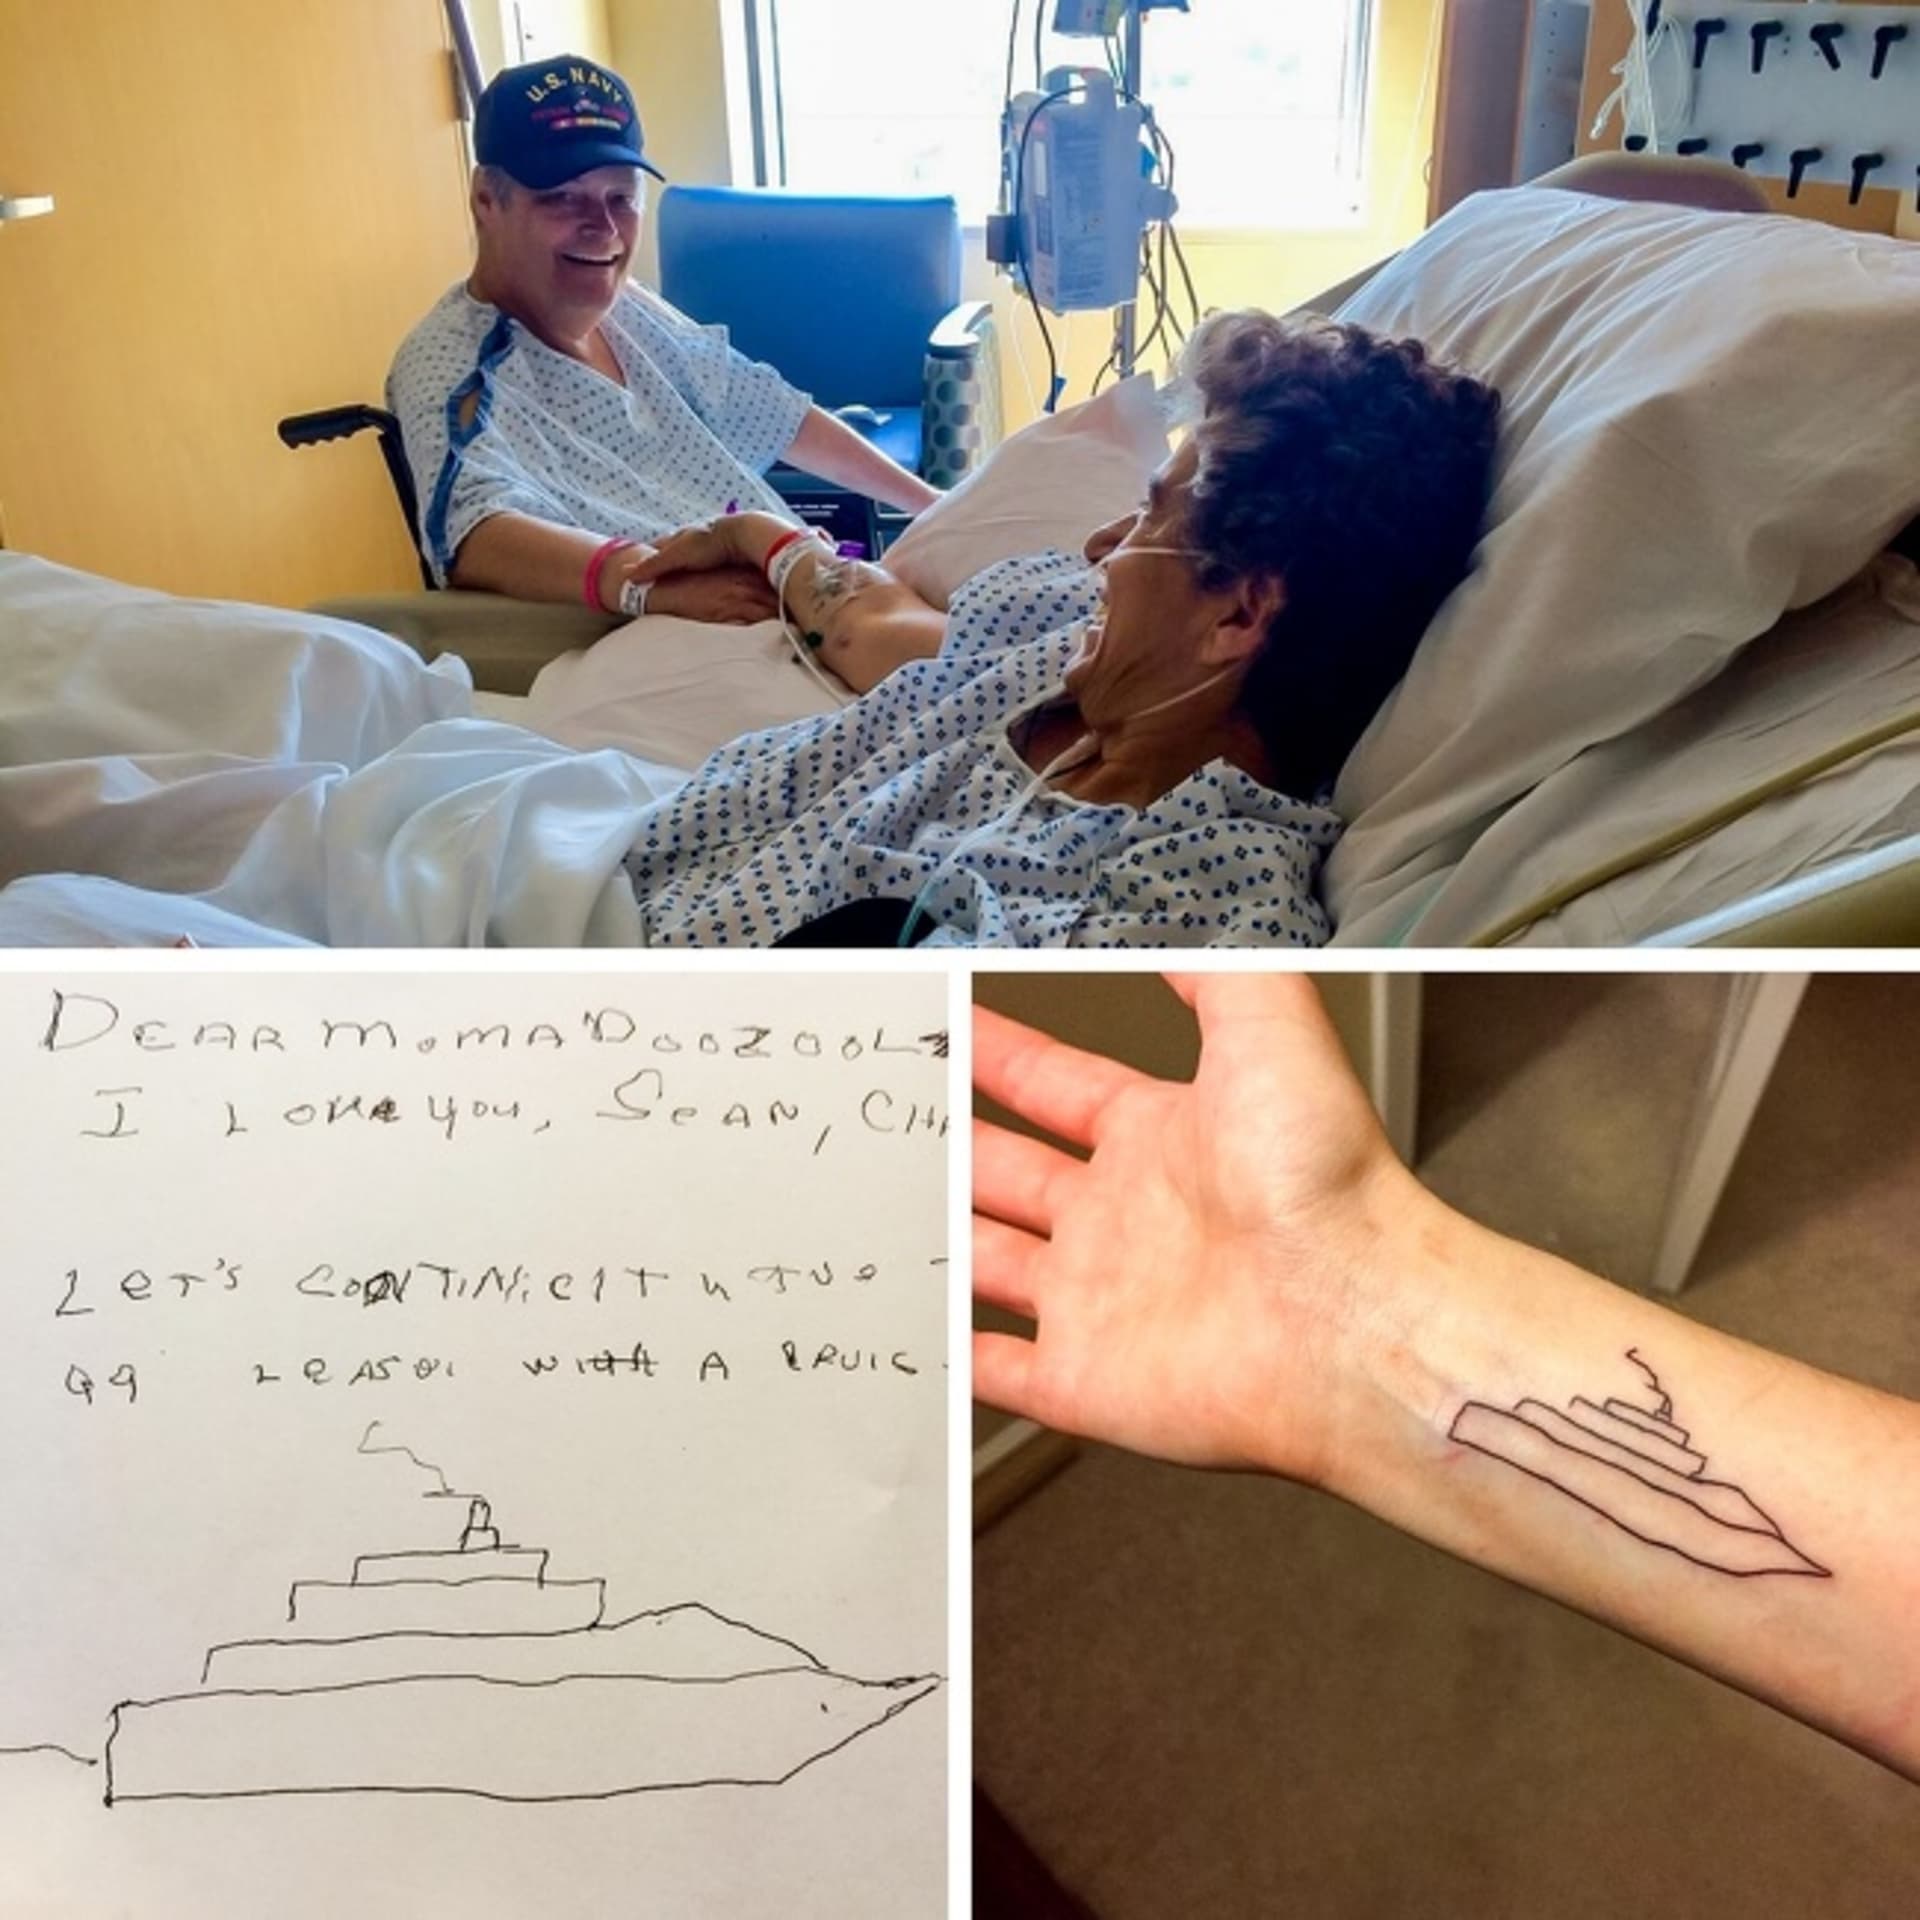 "Moje máma a táta měli rakovinu v tu samou dobu. Udělal jsem si tetování na jejich památku. Je to psaní, co napsal můj táta pro moji mámu, když ji nemohl navštívit v nemocnici."